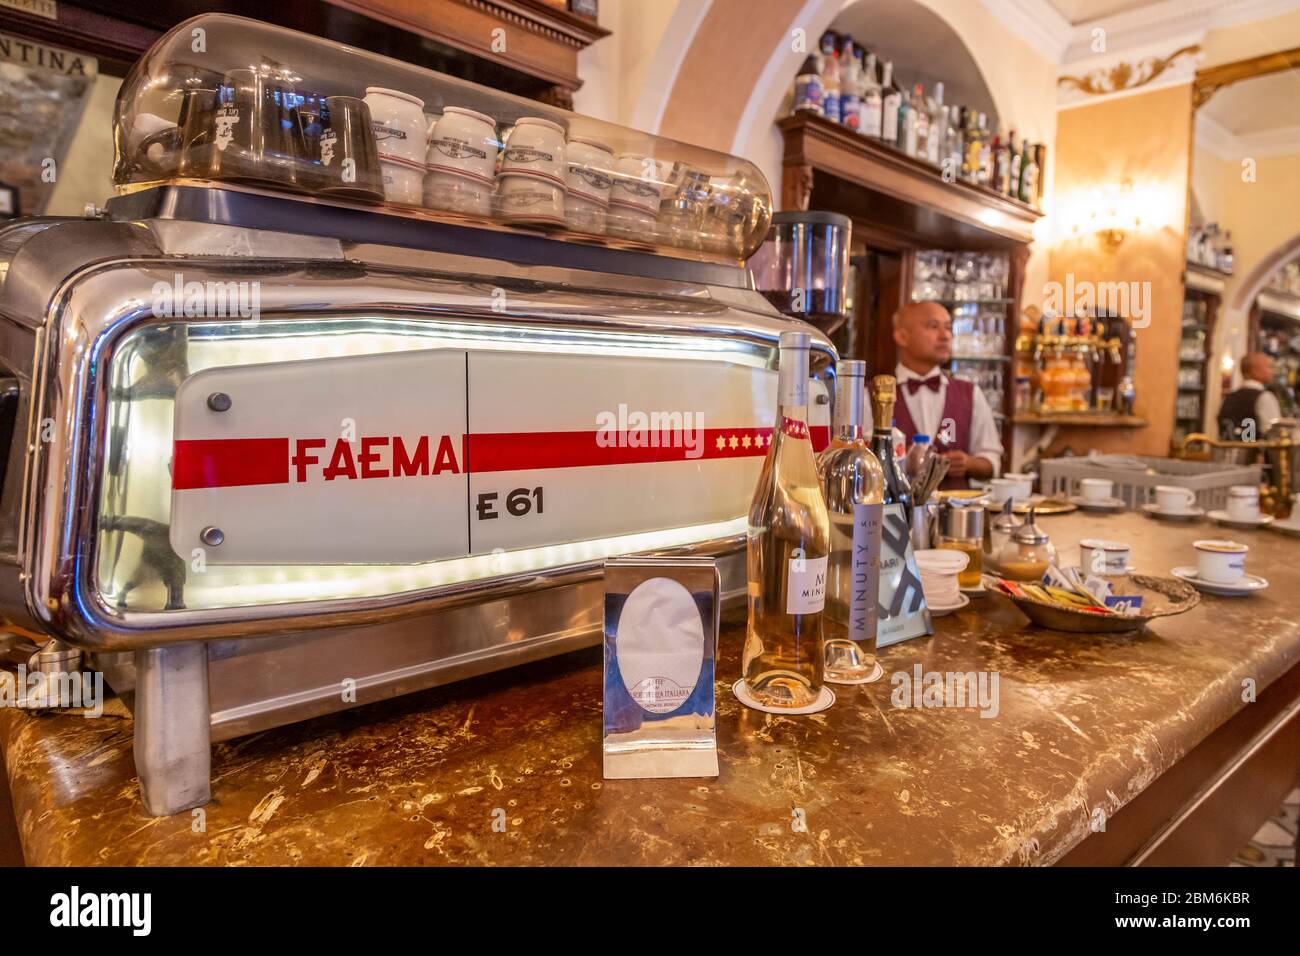 Faema E61 Siebträgermaschine, Caffee Fiaschetteria Italiana, Montalcino, Toskana, Italien Stock Photo